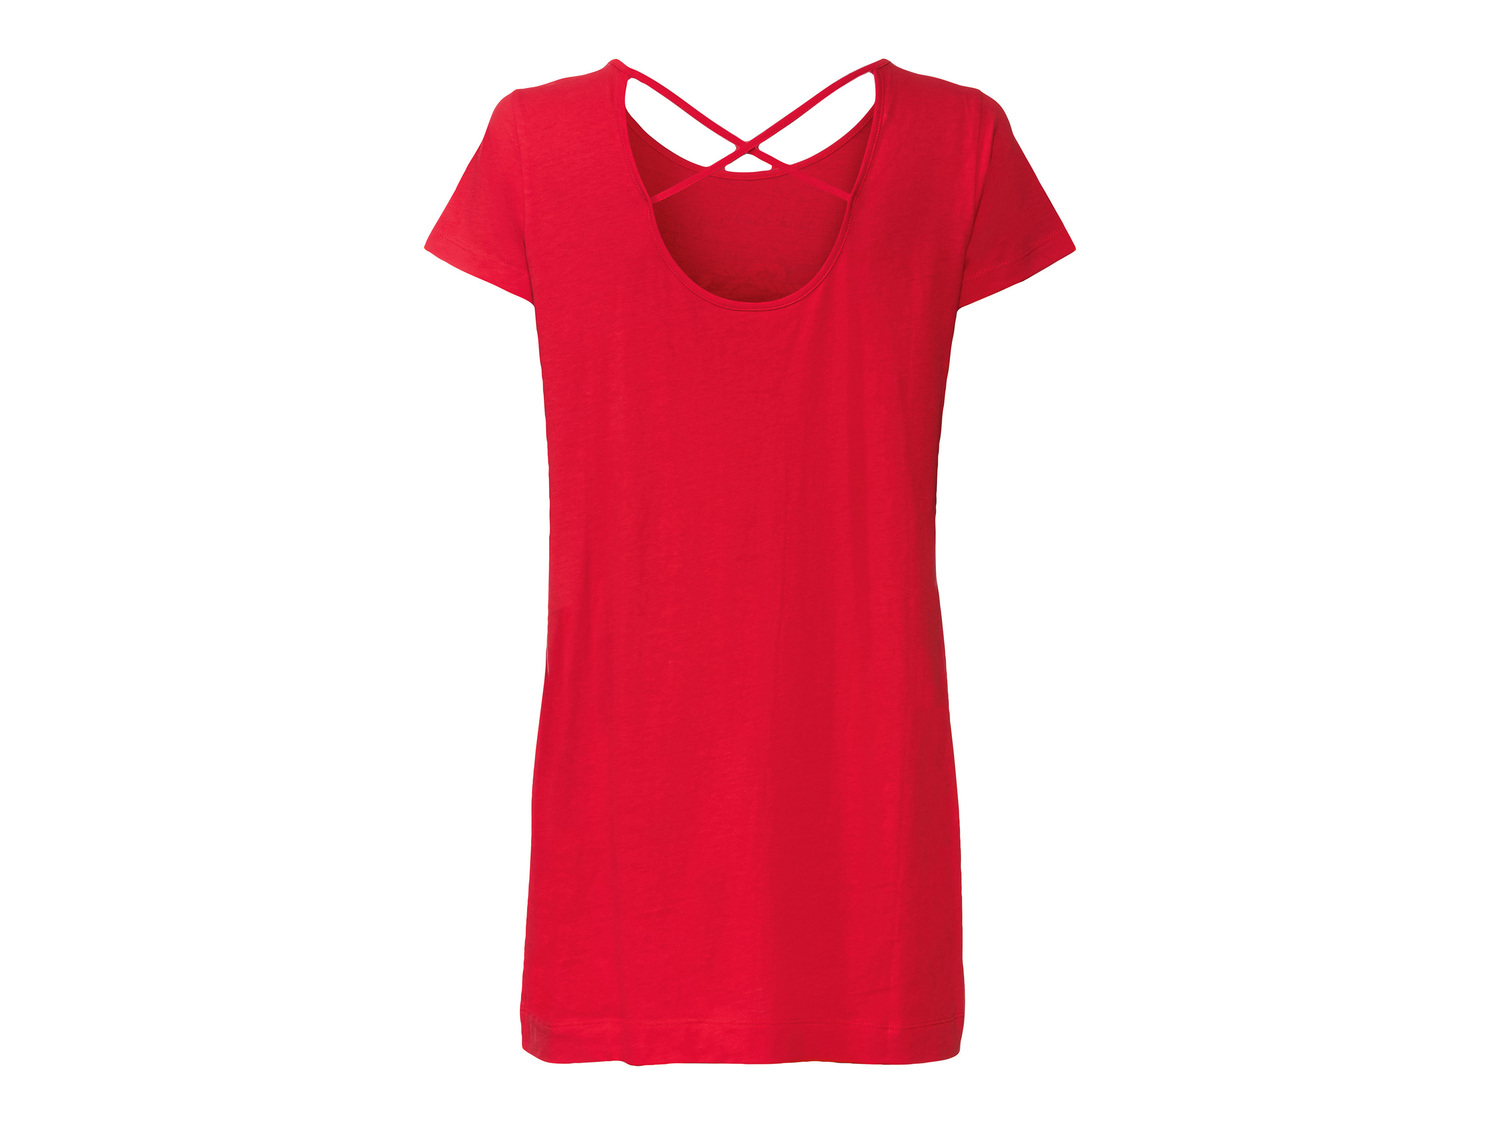 T-shirt lunga da donna Esmara, prezzo 4.99 &#8364; 
Misure: S-L 
- Puro cotone
Caratteristiche

- ...